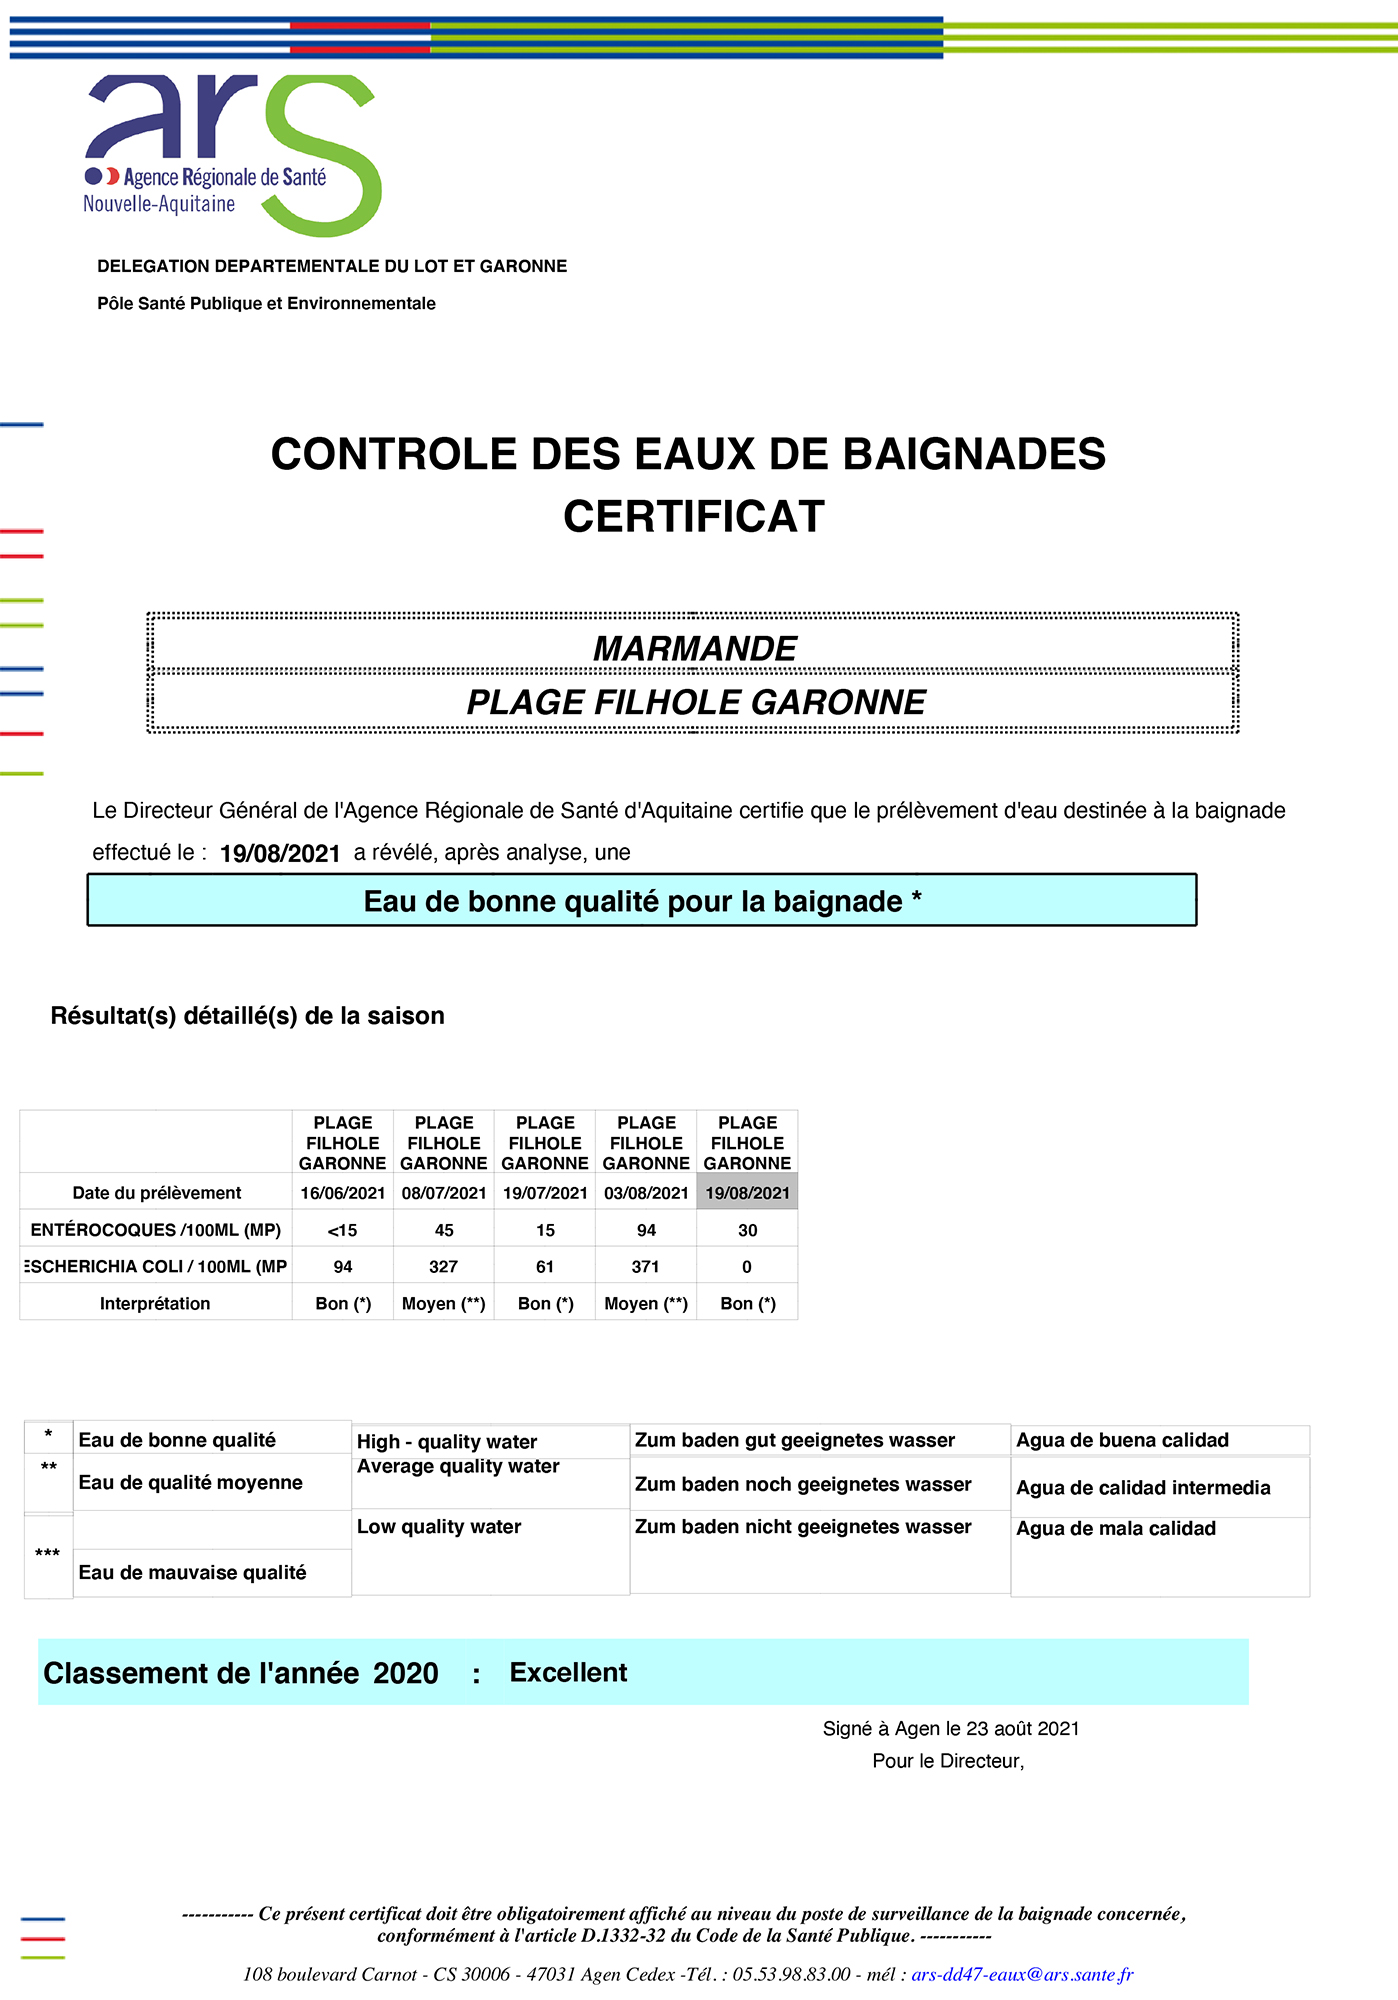 Certificat de contrôle des eaux de baignade